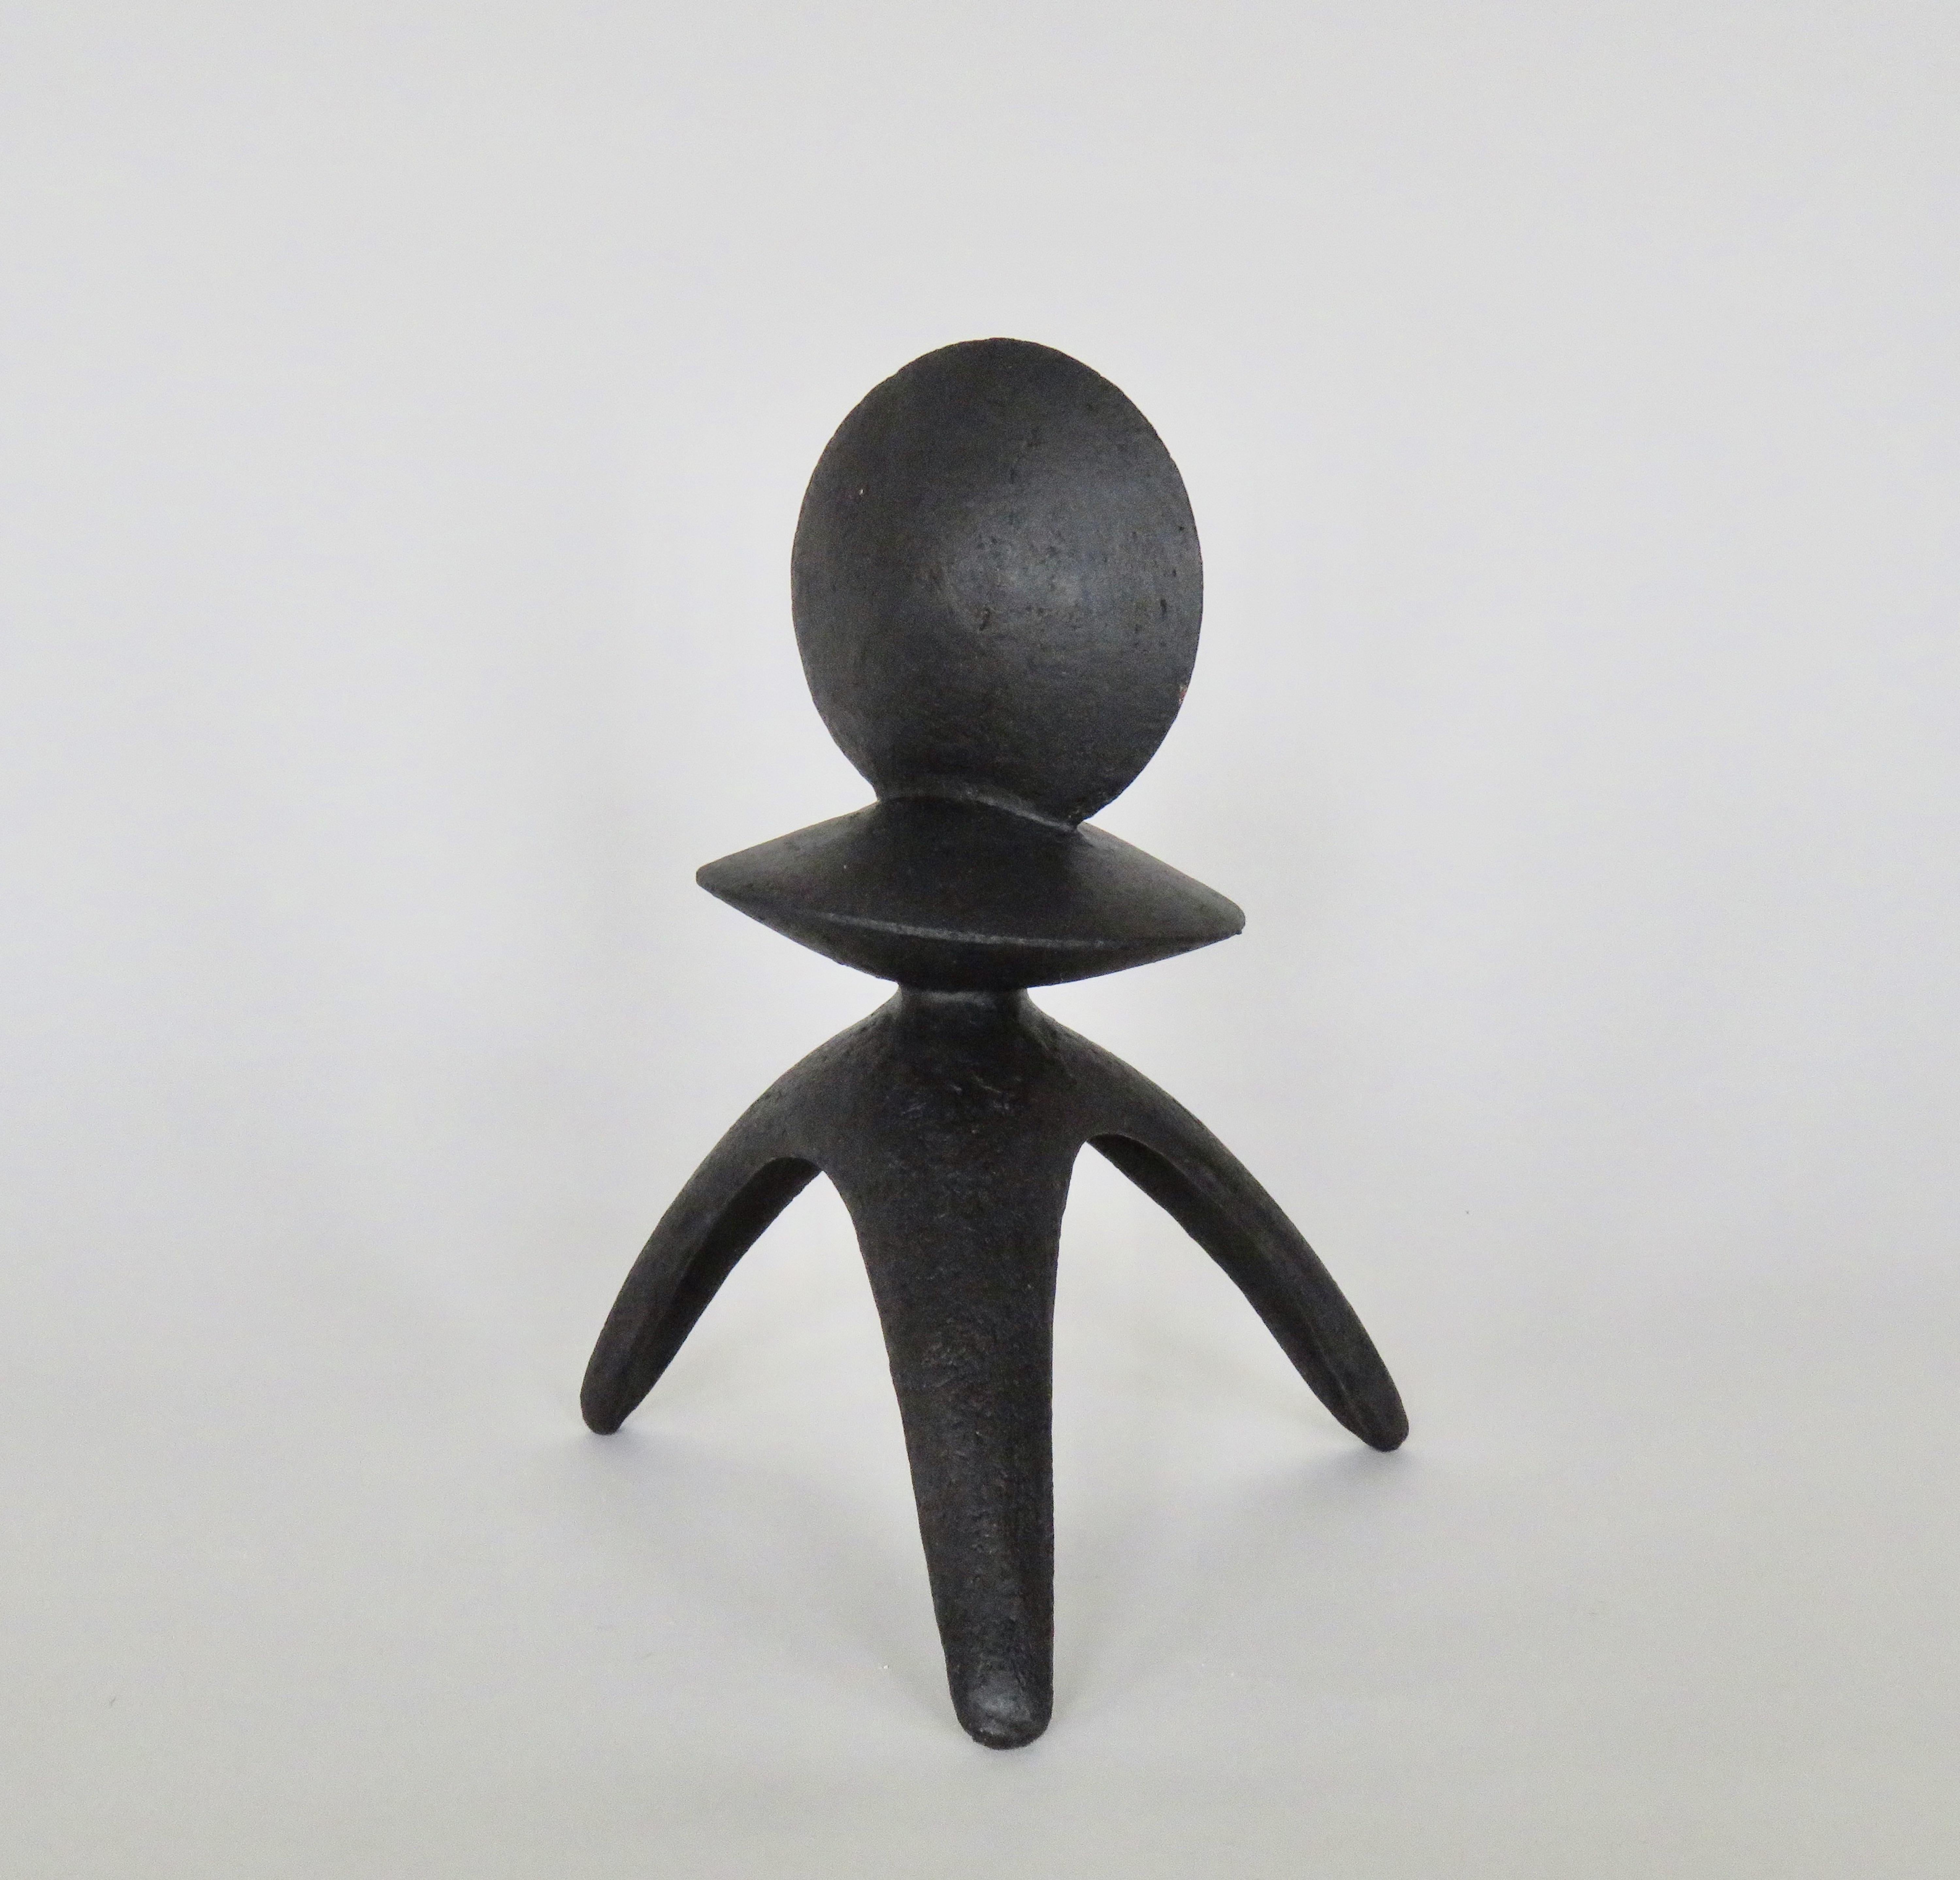 Ce modèle fait partie d'une série de TOTEMS en céramique entièrement fabriqués à la main, en grès émaillé noir mat. Celui-ci, 